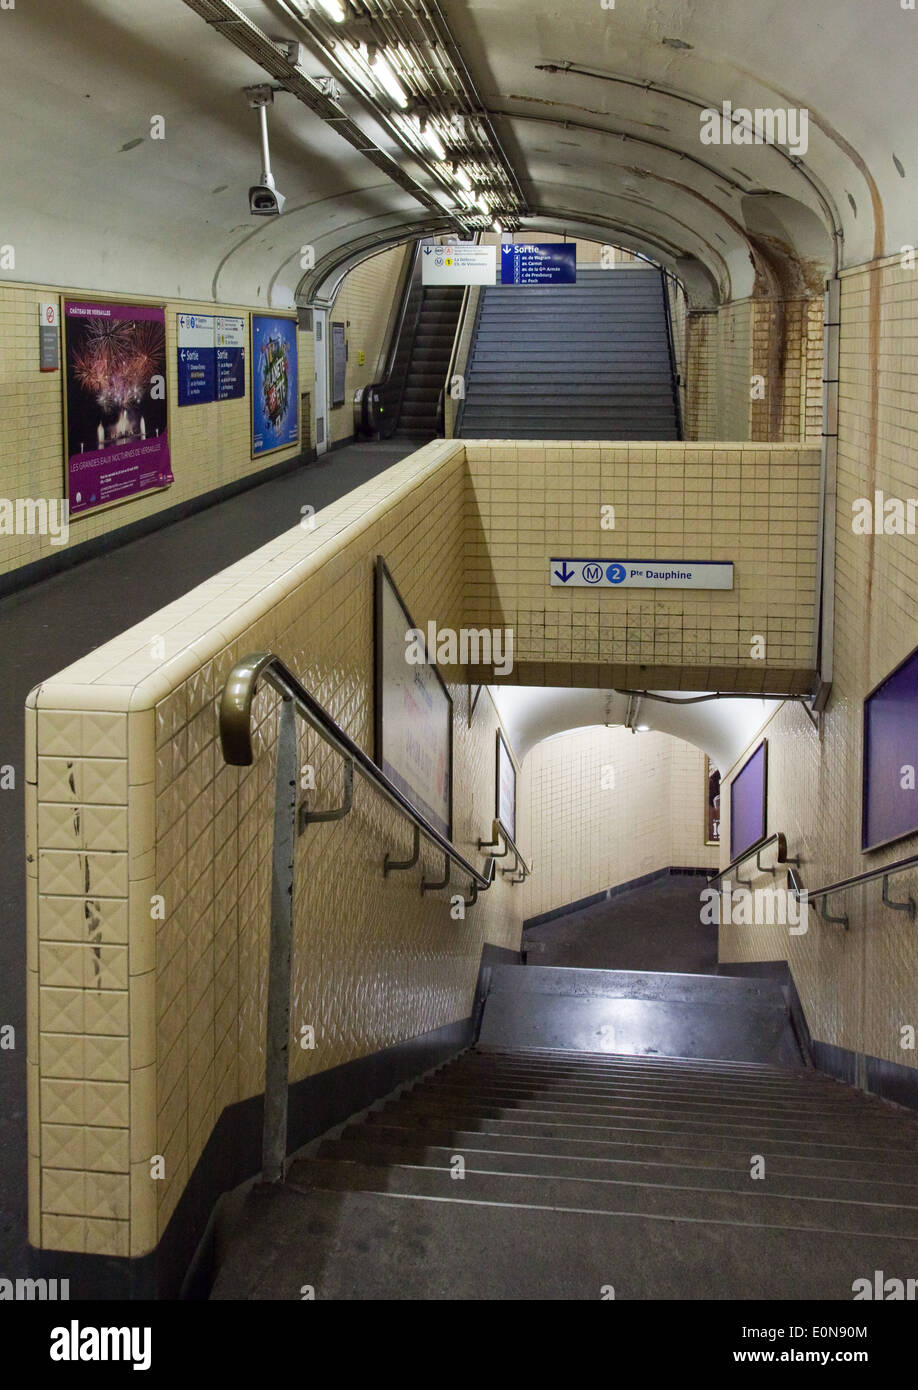 La station de métro à Paris, Frankreich - Metro Station in Paris, France Banque D'Images